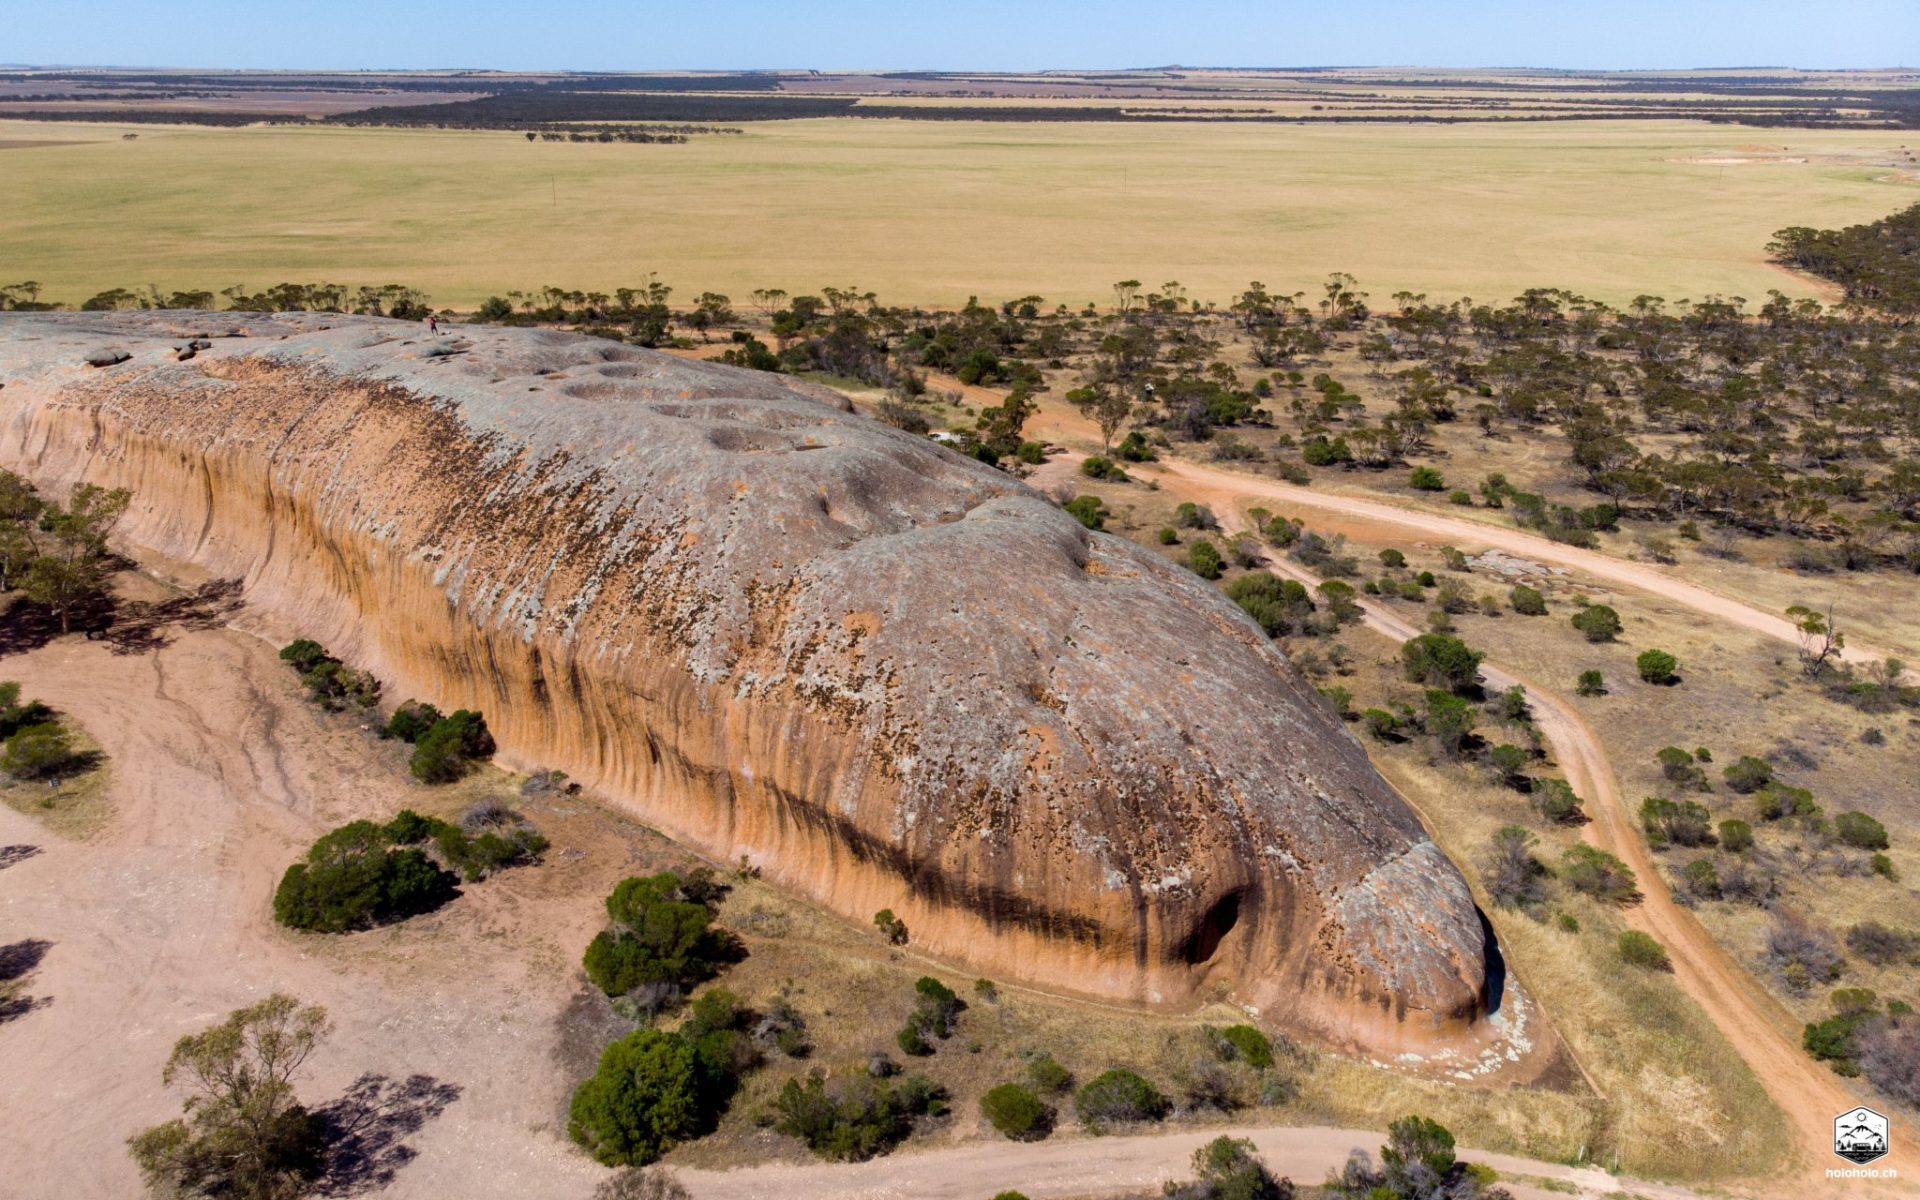 Pildappa Rock - Australien